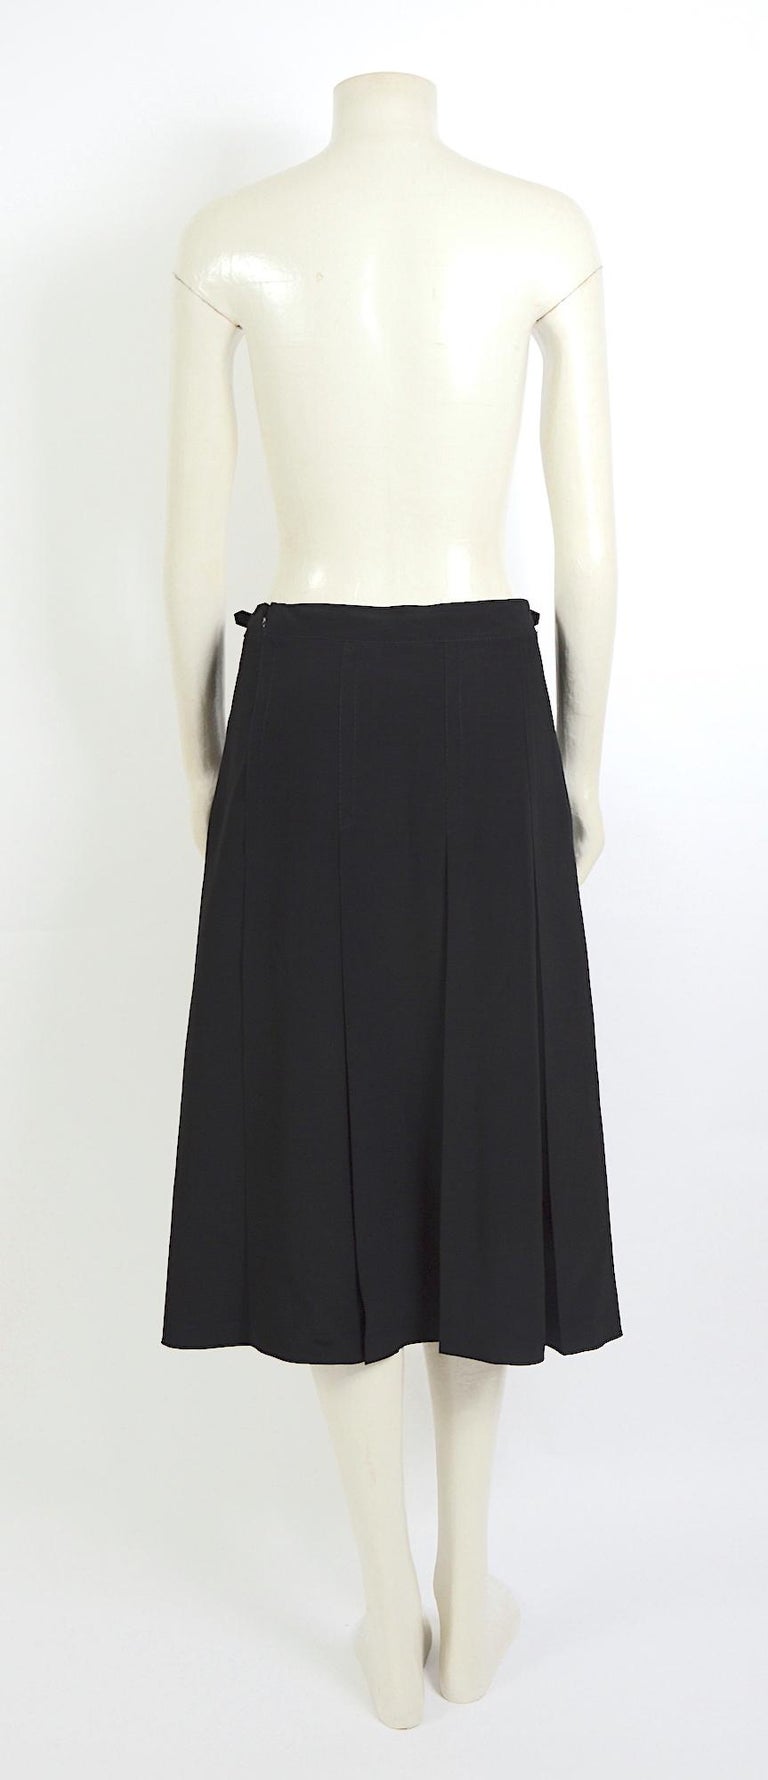 Céline Paris vintage black pleated skirt. For Sale at 1stdibs